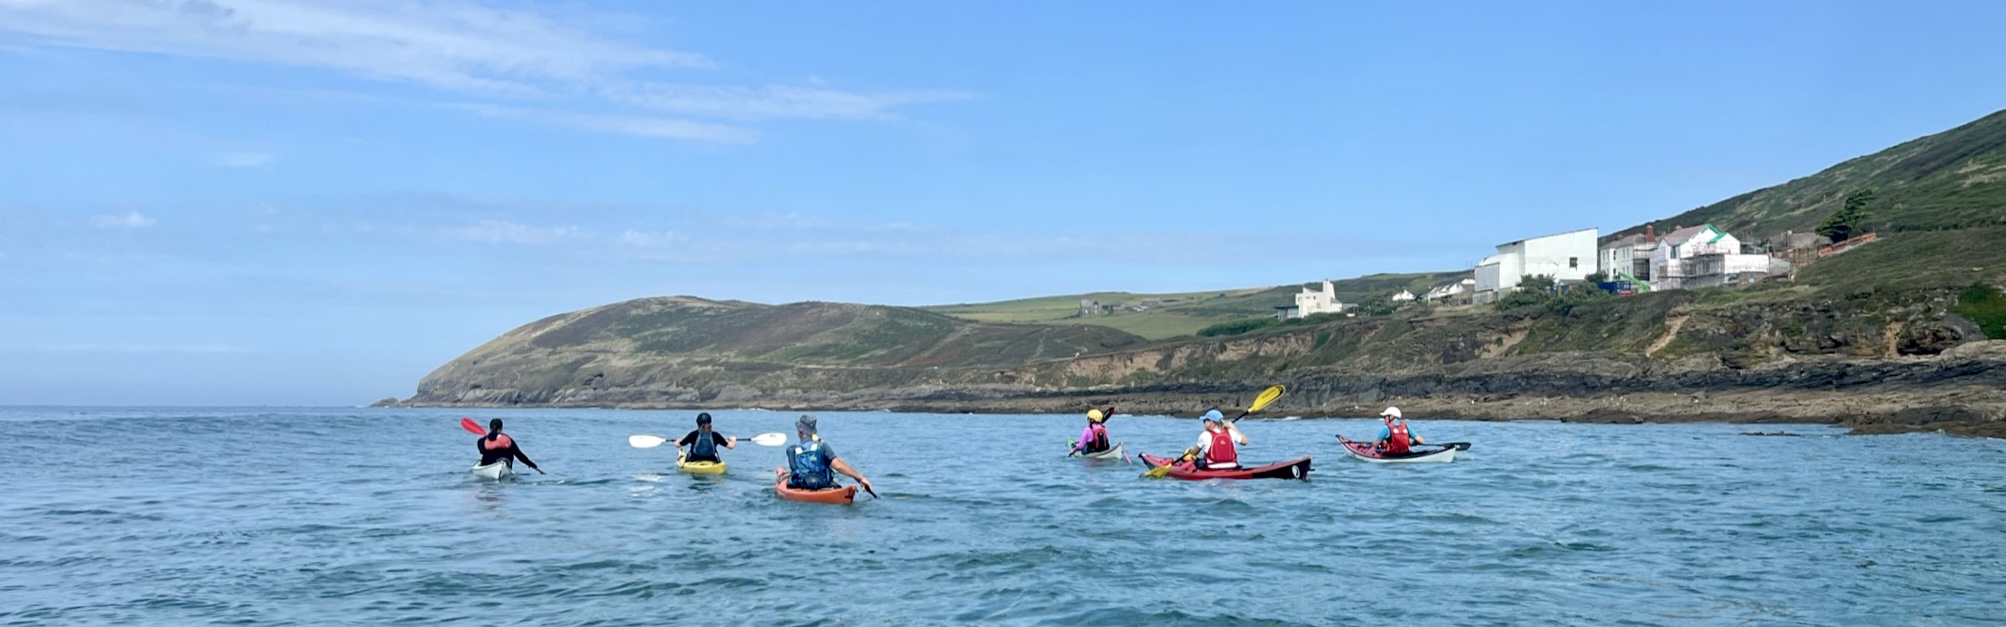 Summer Sigh - North Devon & Exmoor Sea Kayak Get Together